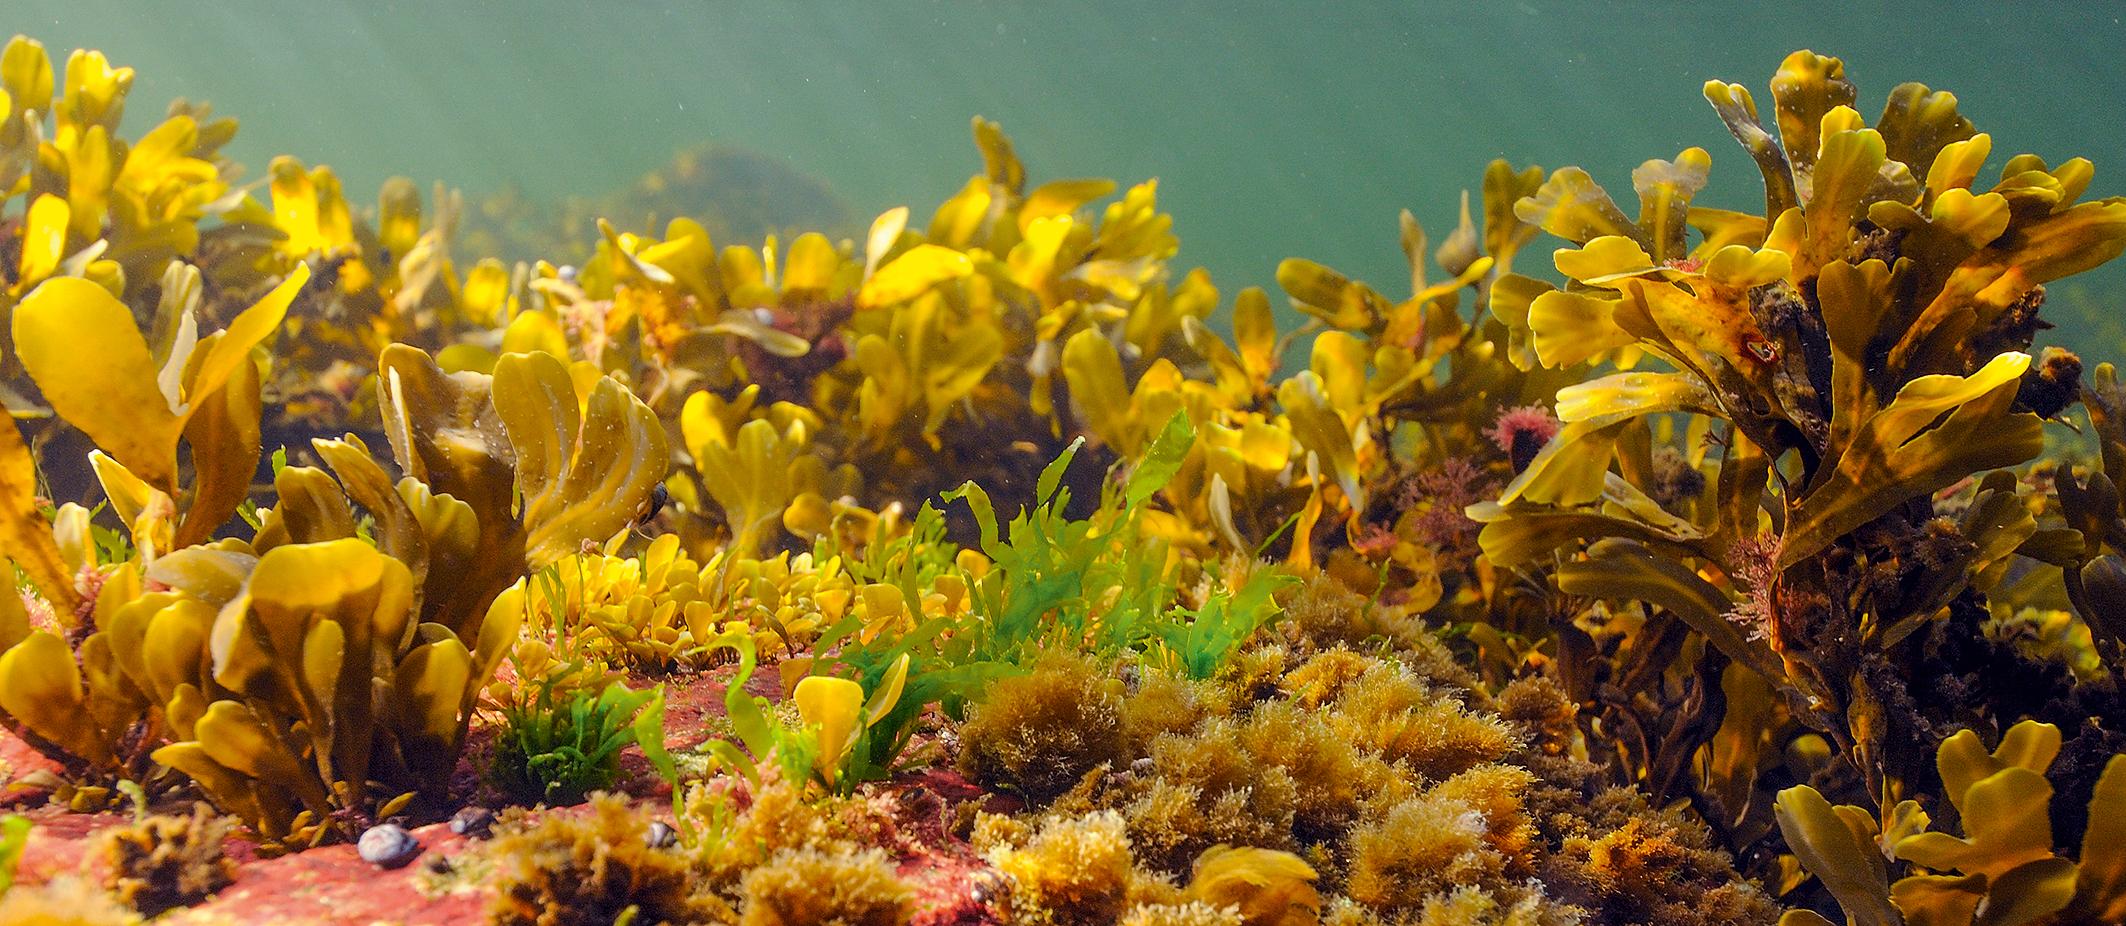 alger i havsbotten